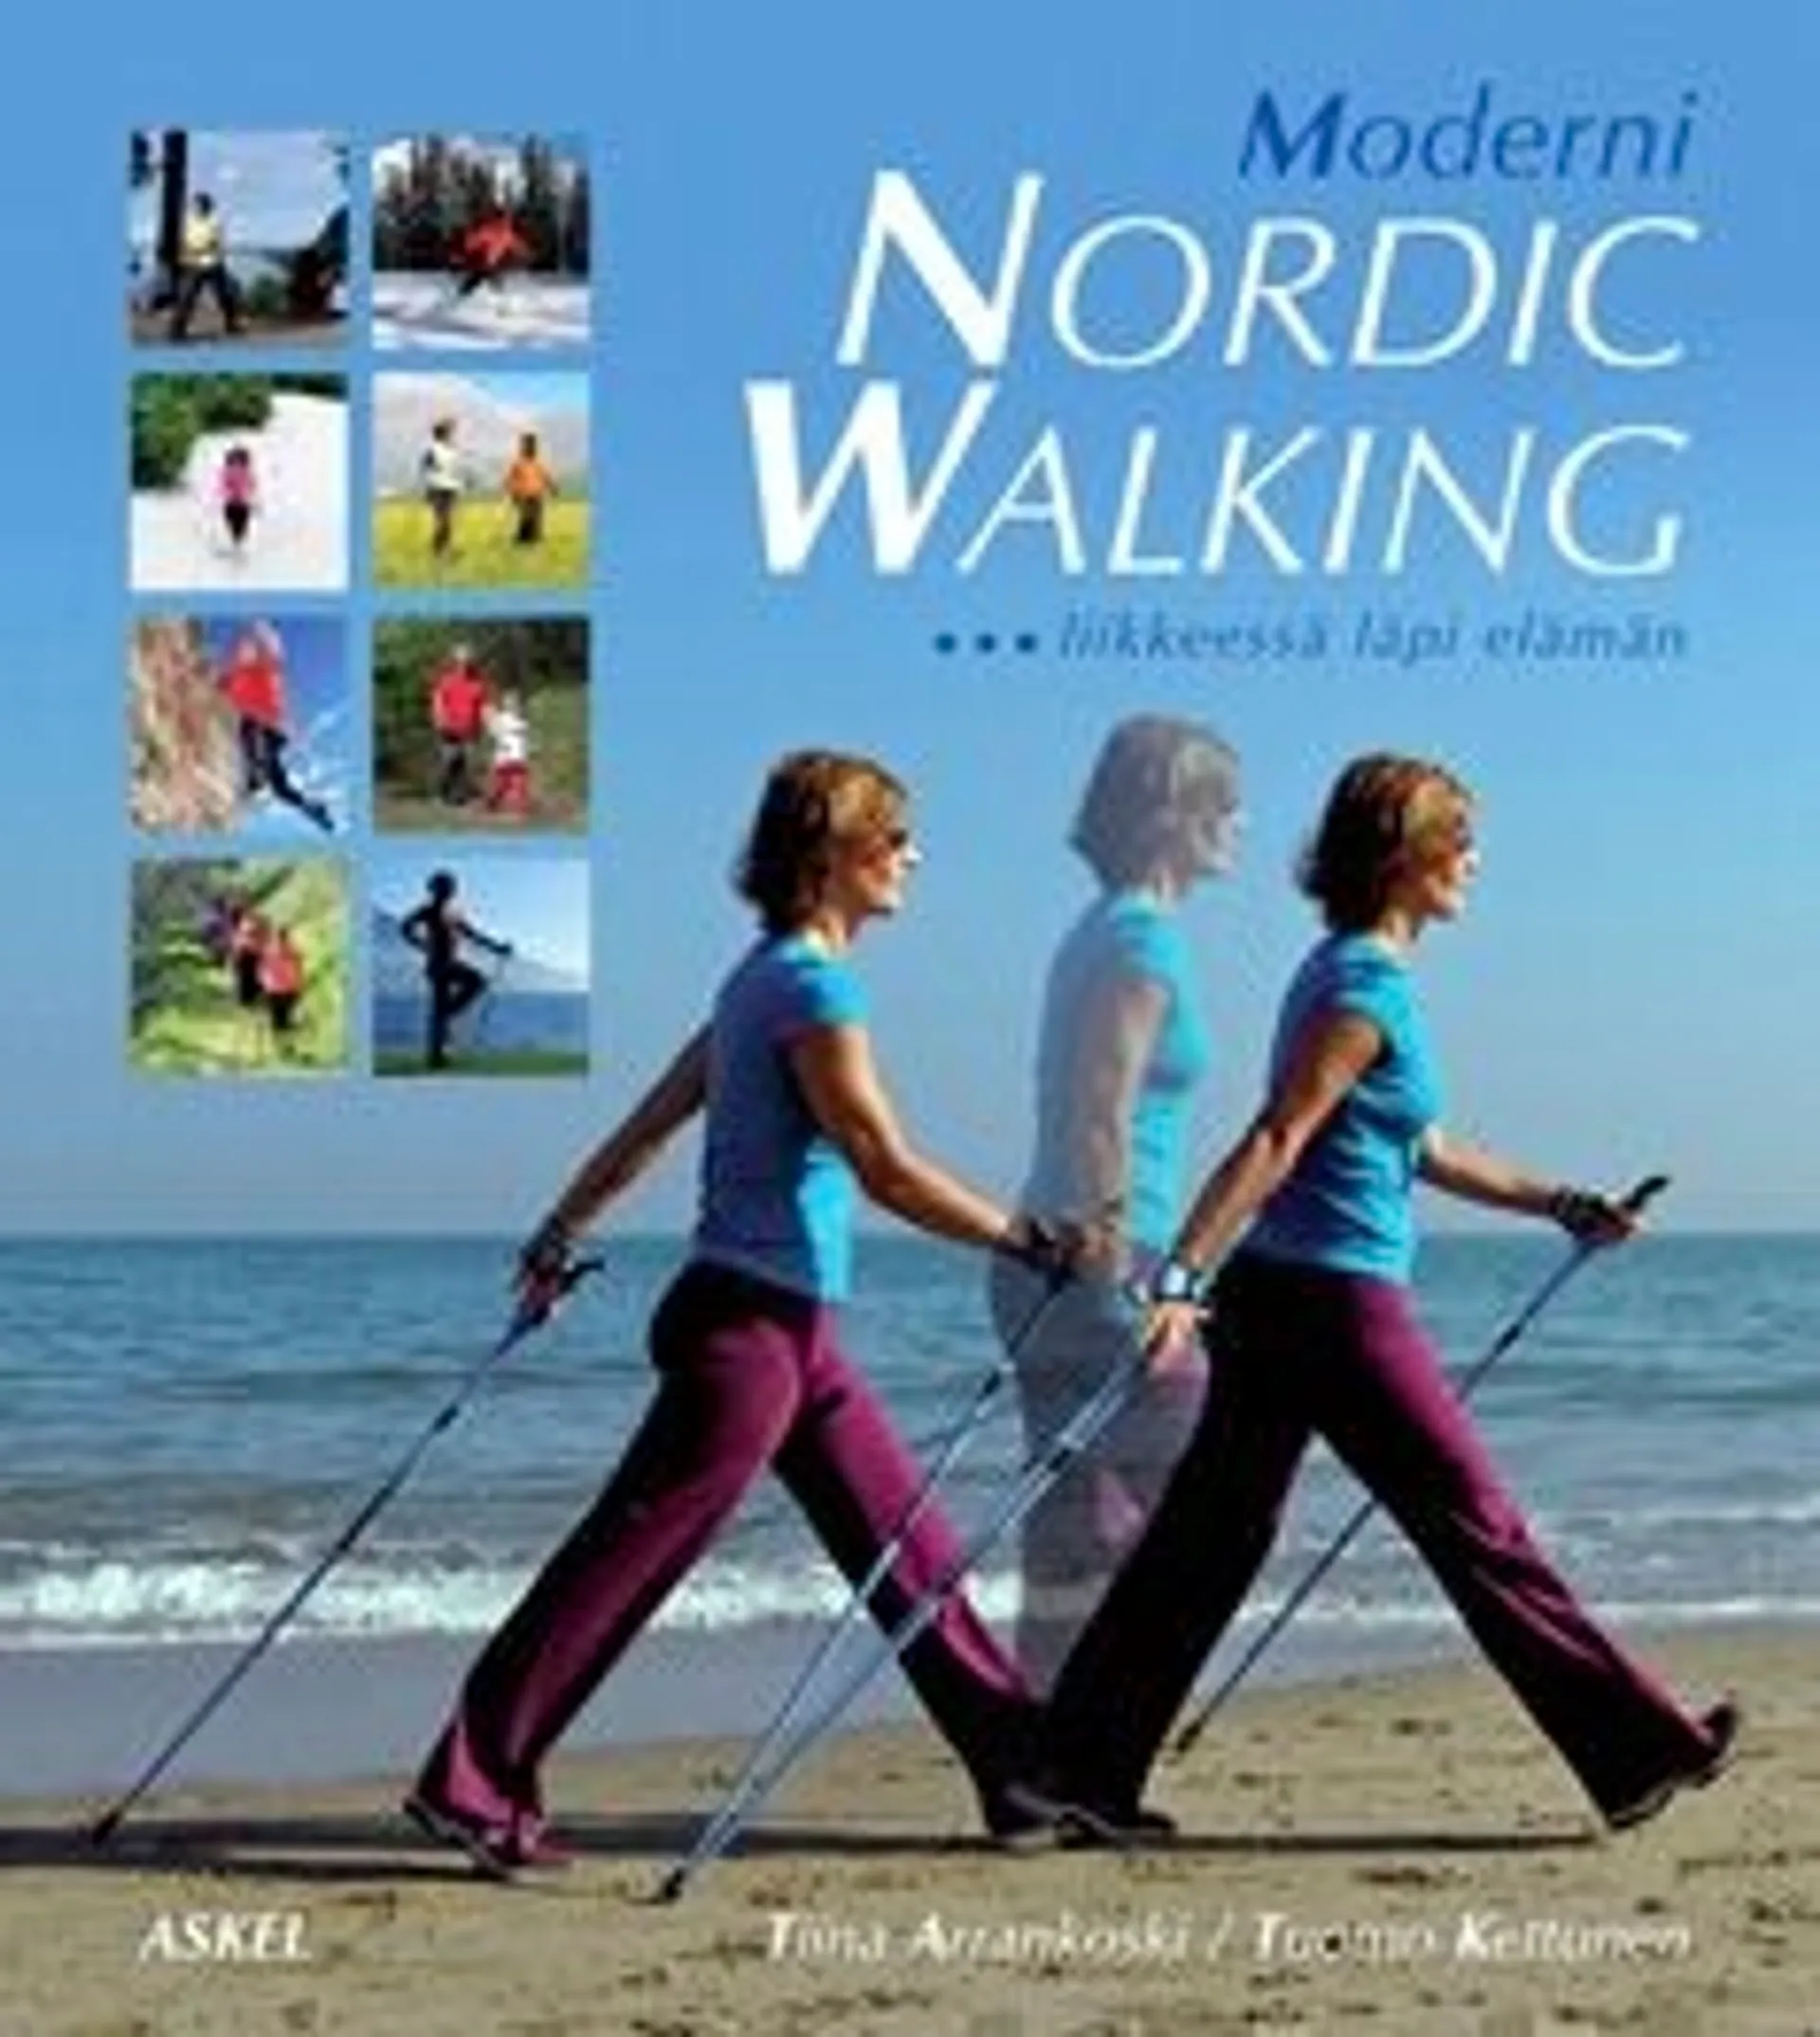 Arrankoski, Moderni Nordic Walking - liikkeessä läpi elämän